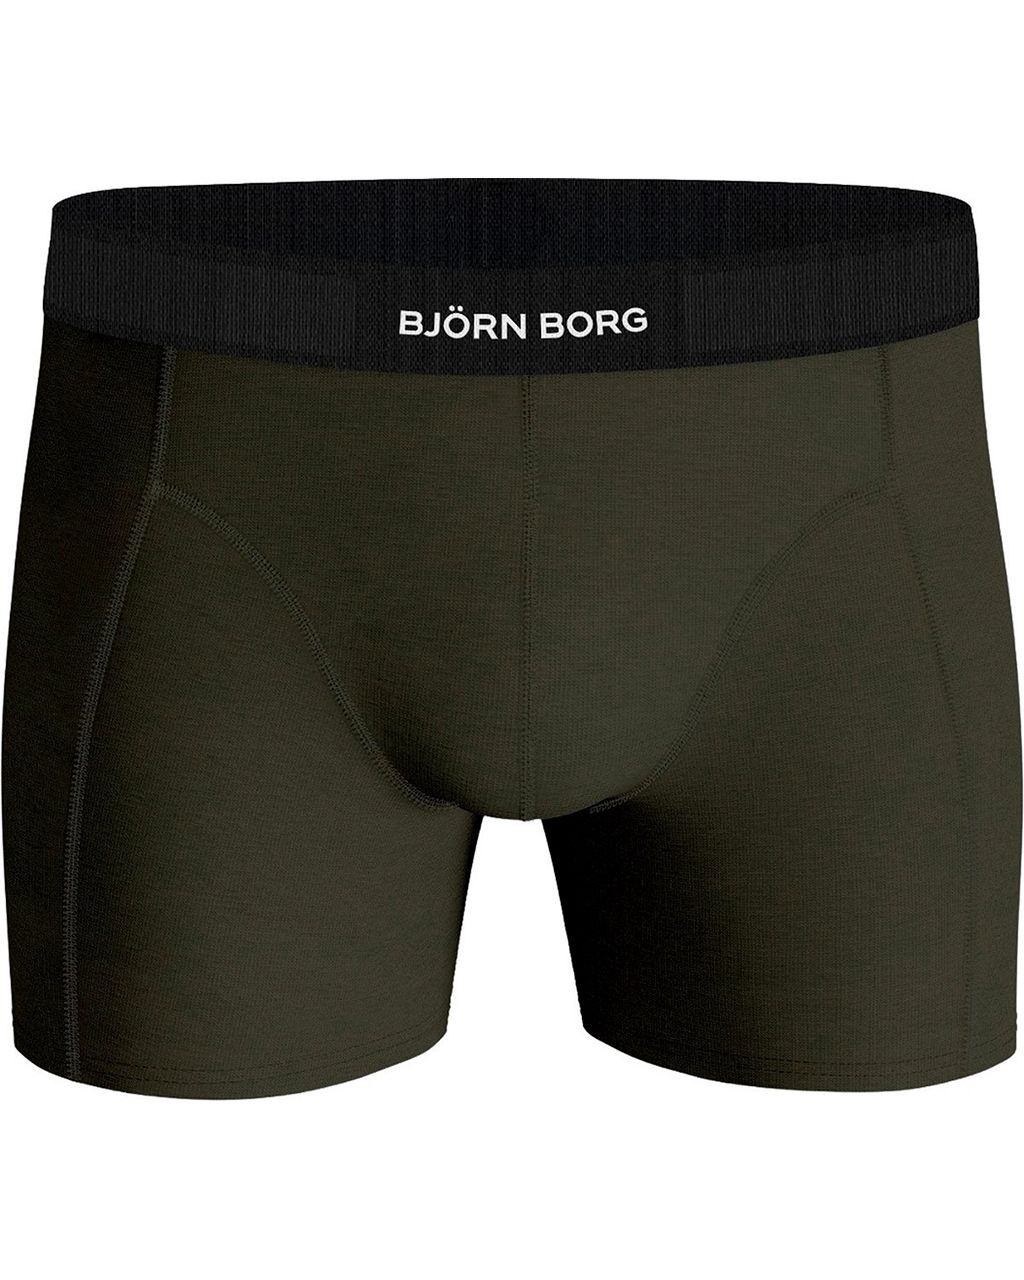 Björn Borg Boxershort 2-pack Donker groen 080049-001-L